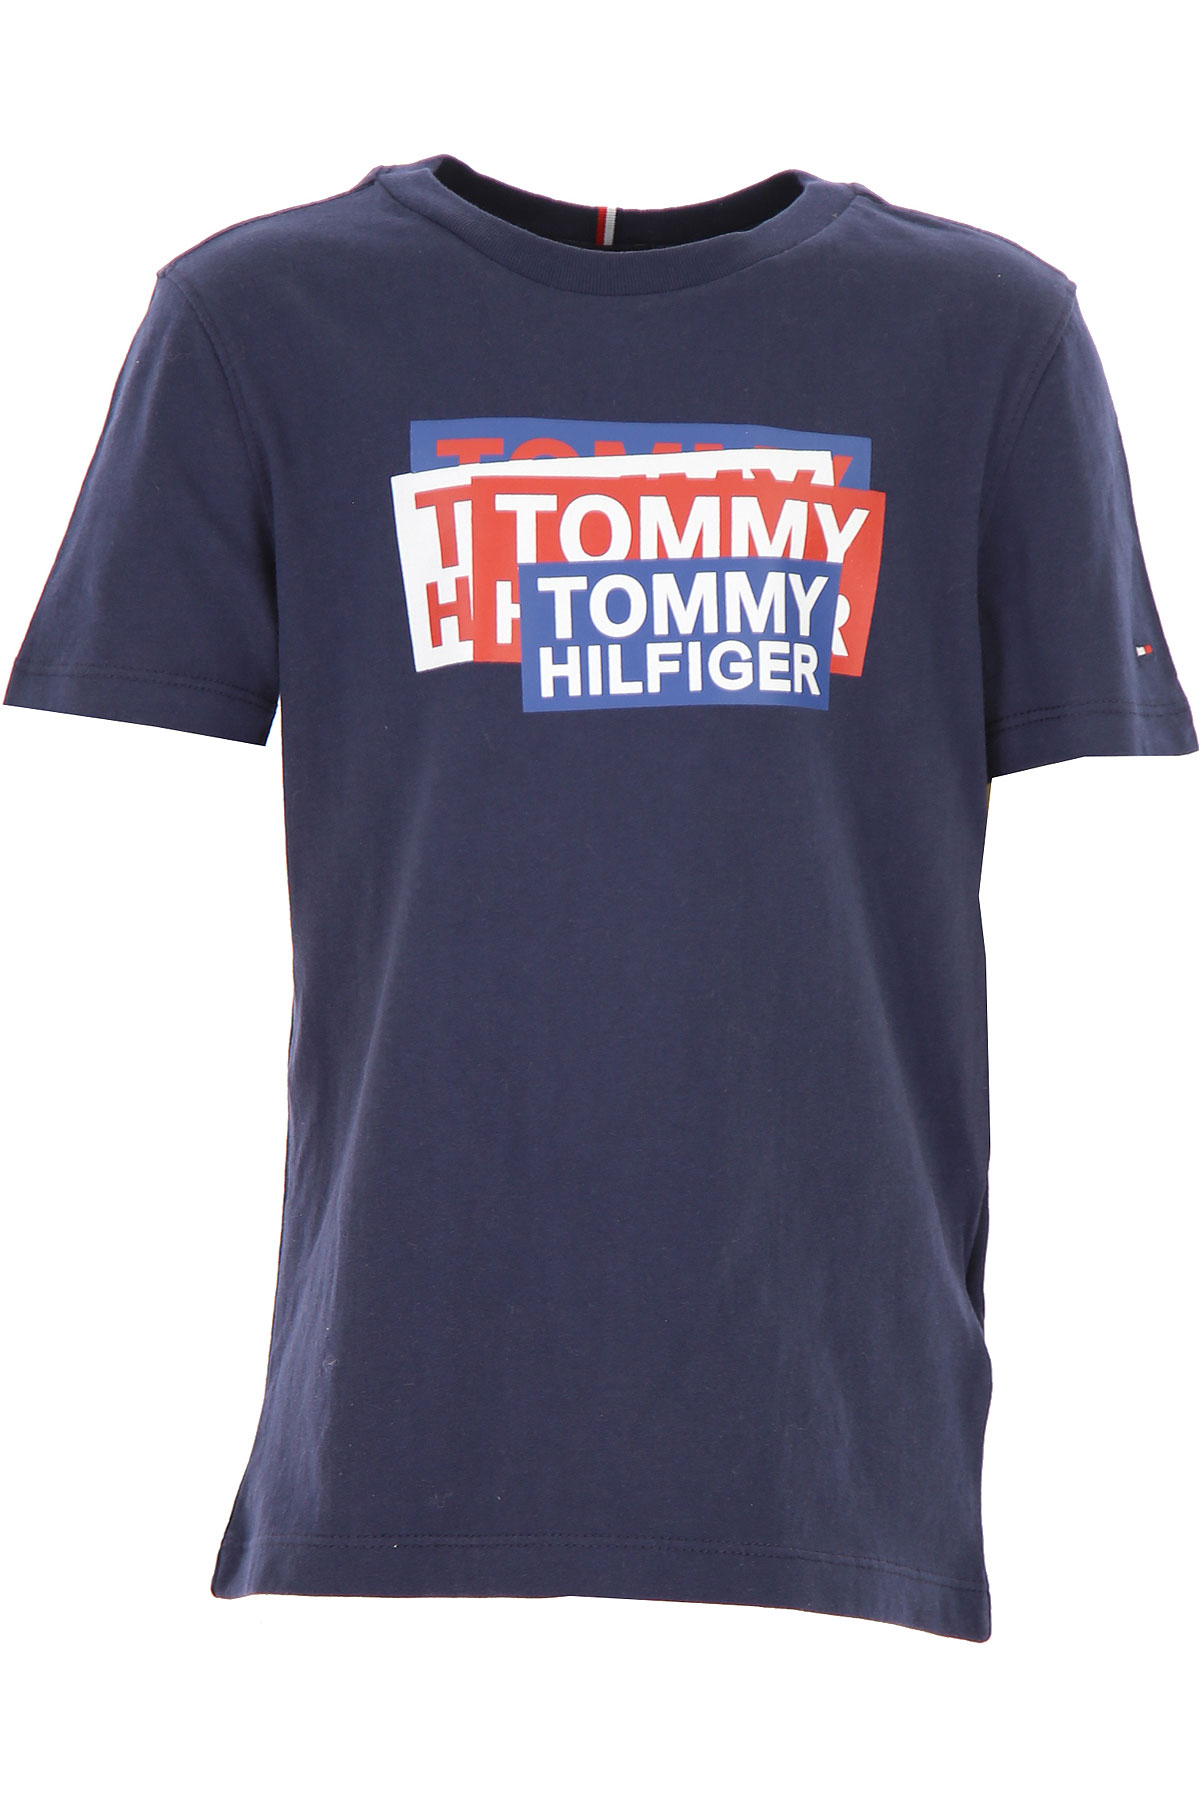 Tommy Hilfiger Kinder T-Shirt für Jungen Günstig im Sale, Blau, Baumwolle, 2017, 10Y 12Y 8Y